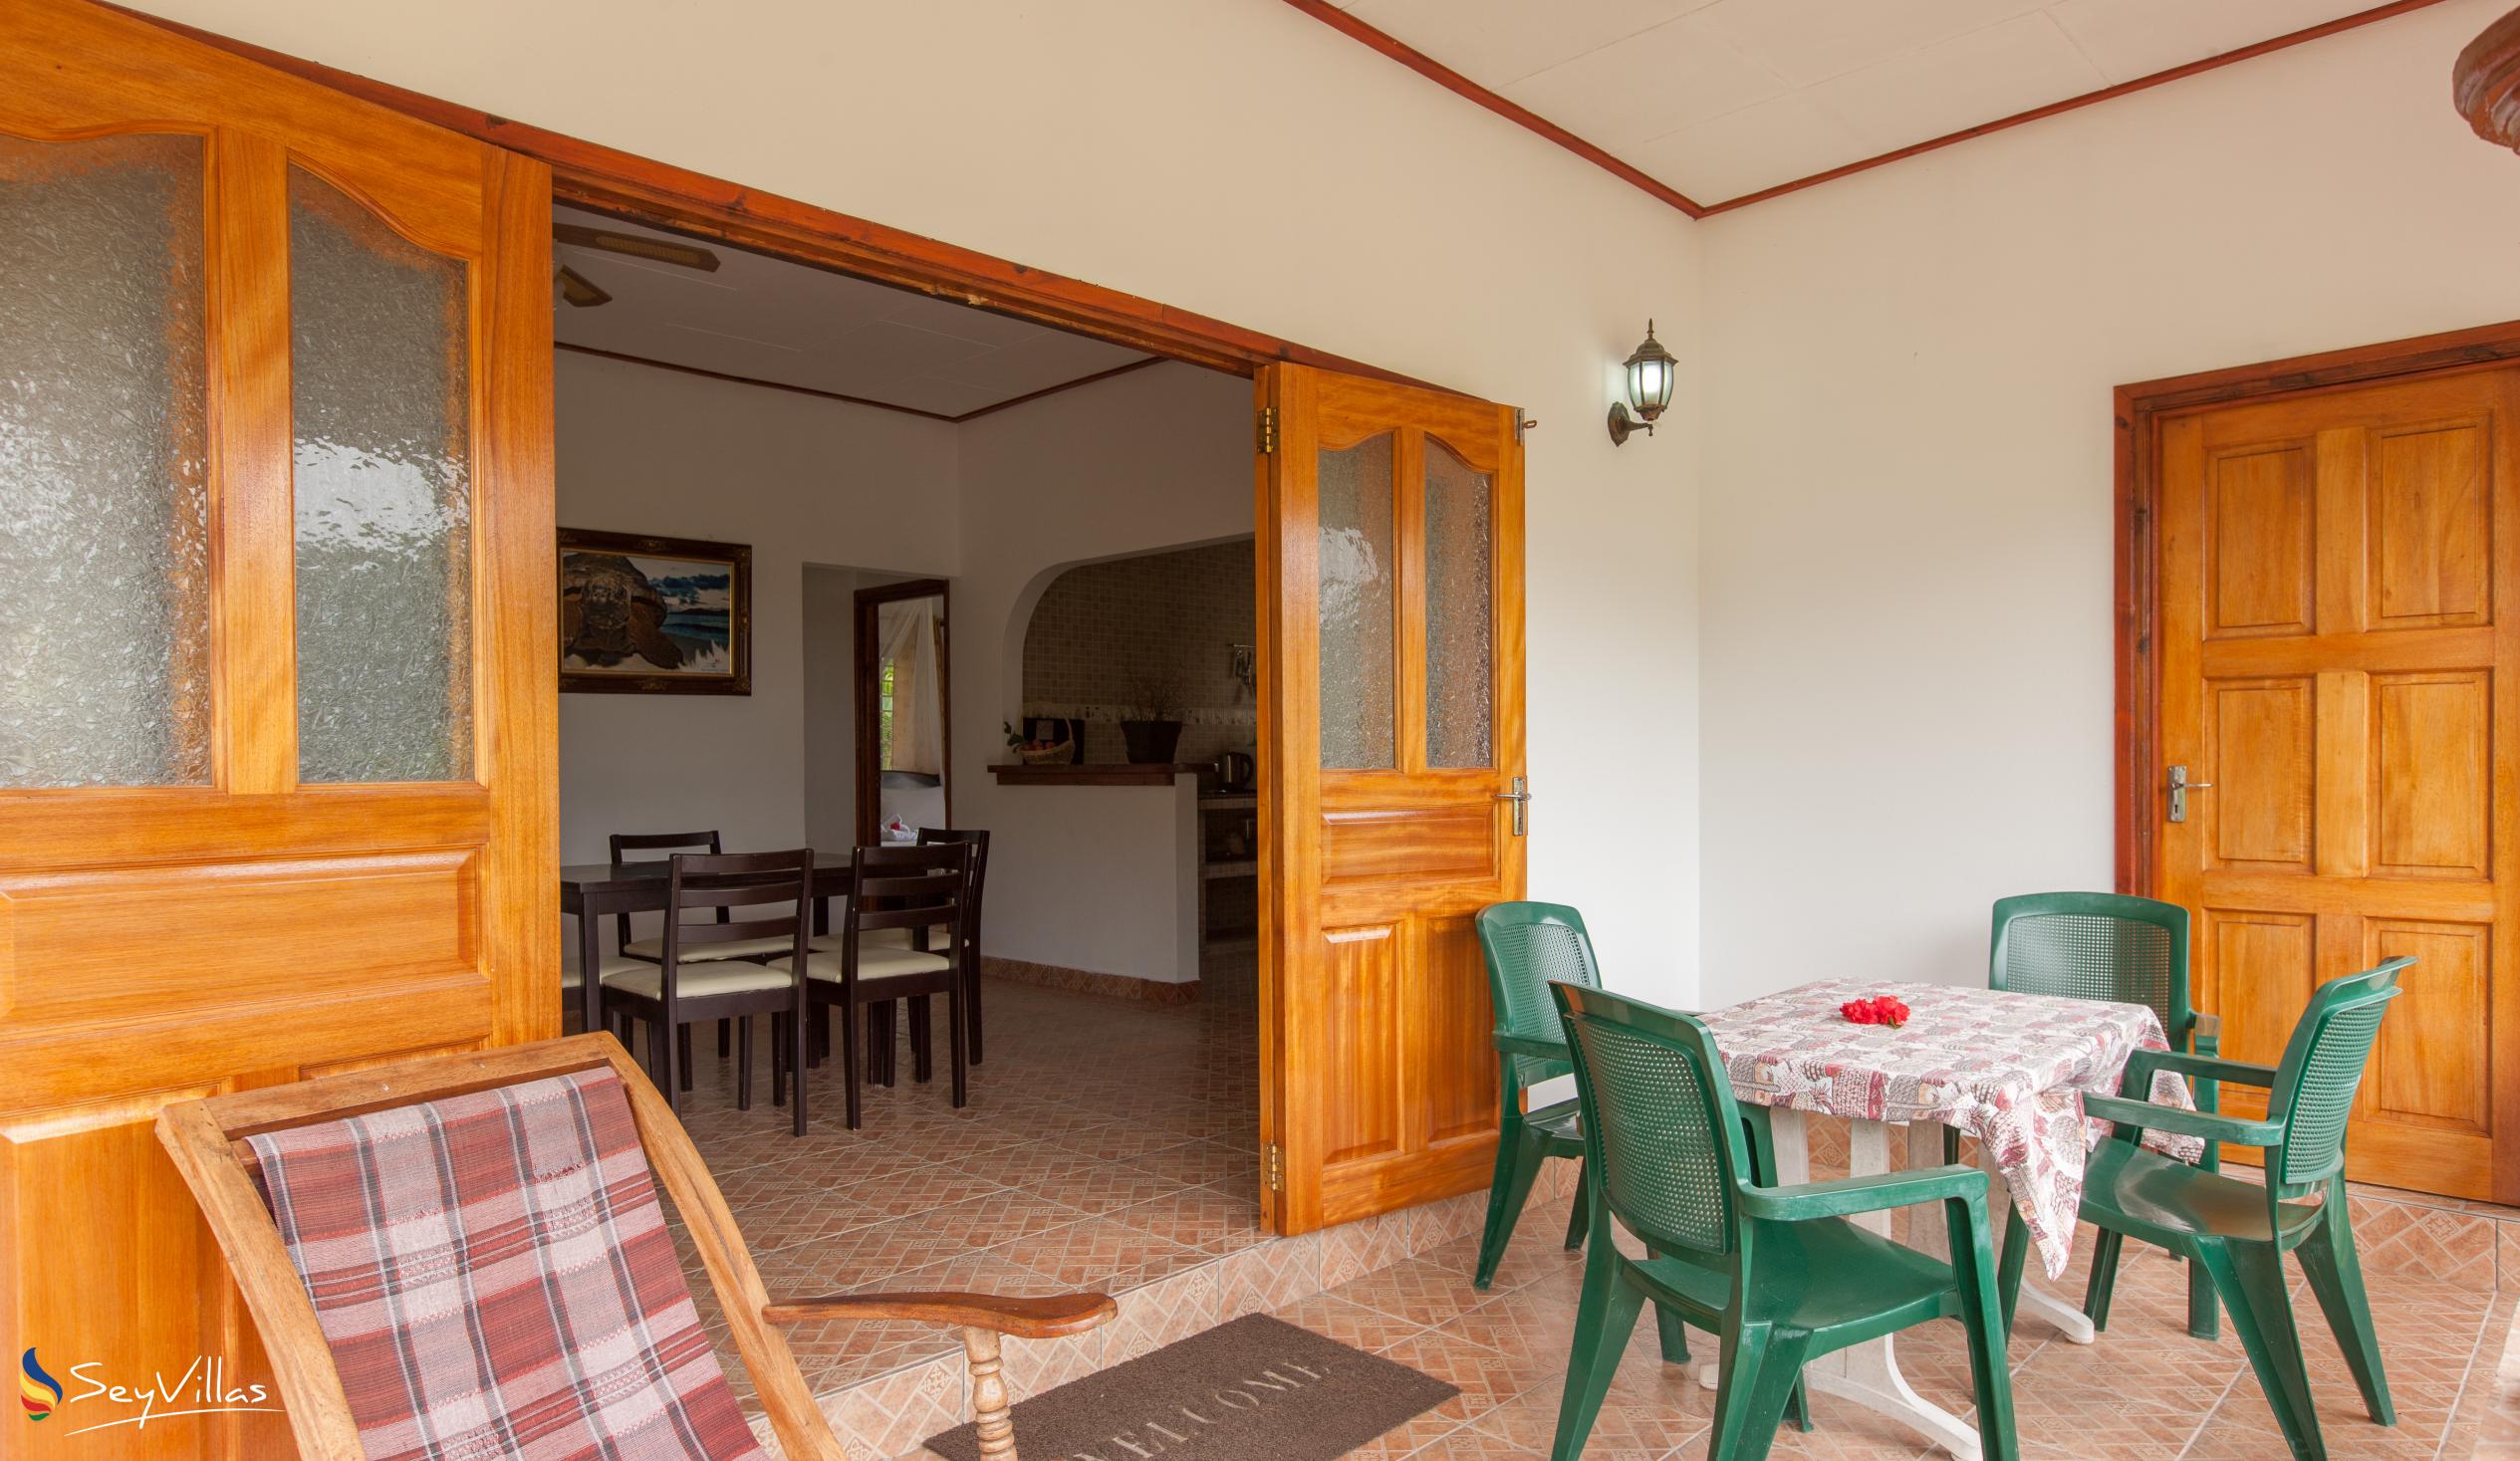 Foto 41: Zerof Self Catering  Apartments - Bungalow à 2 chambres - La Digue (Seychelles)